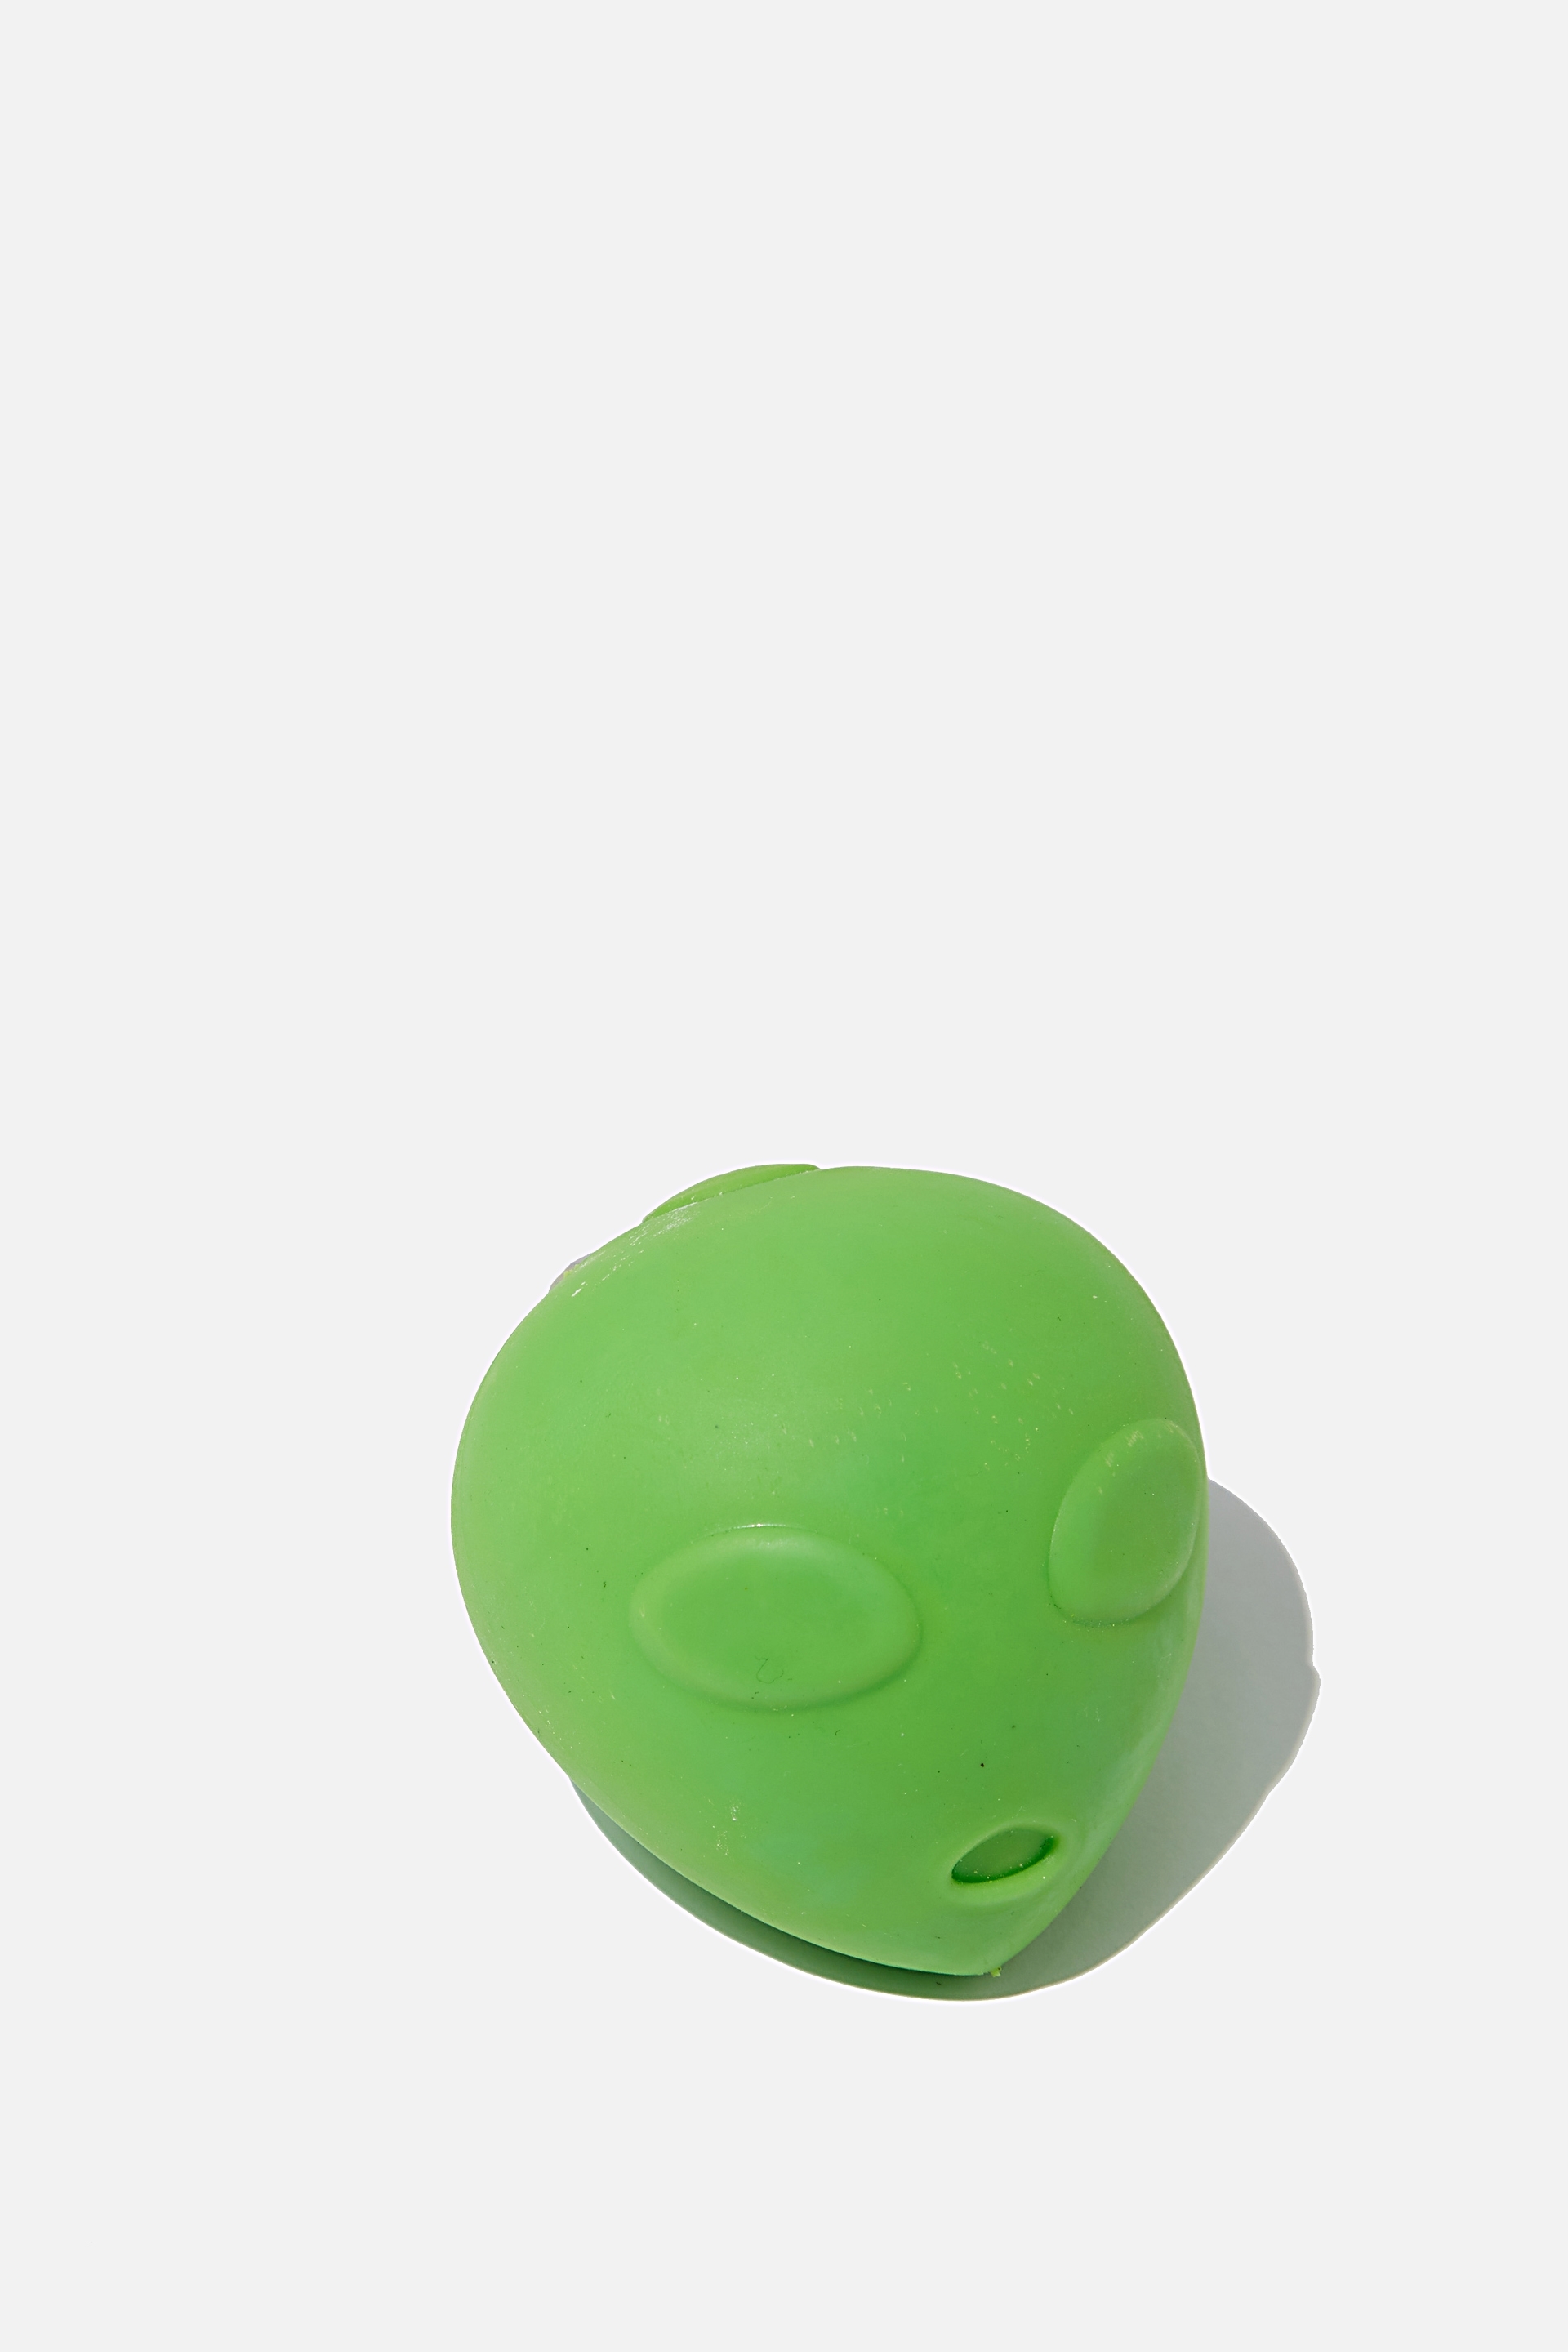 alien stress ball